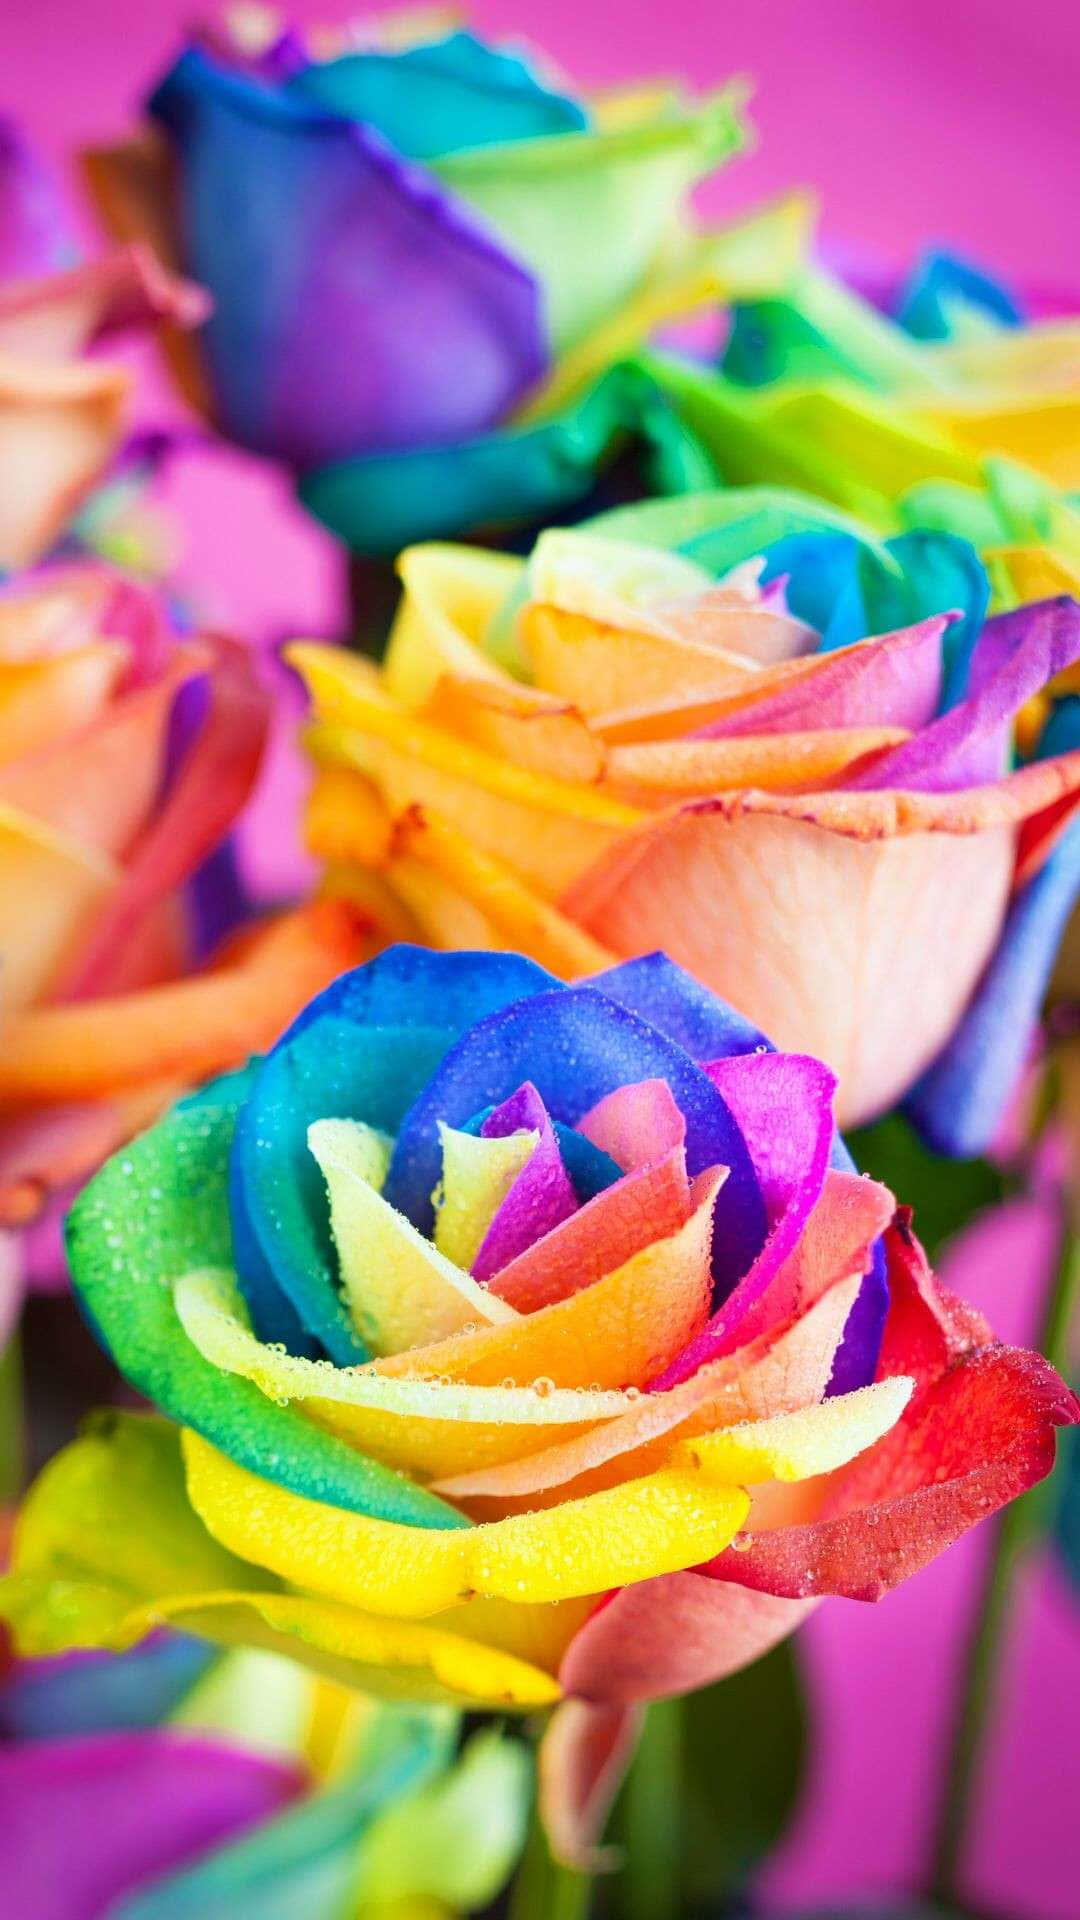 Tilføj et sprudlende udvalg af farver til din telefon med denne Rainbow Flower iPhone wallpaper. Wallpaper